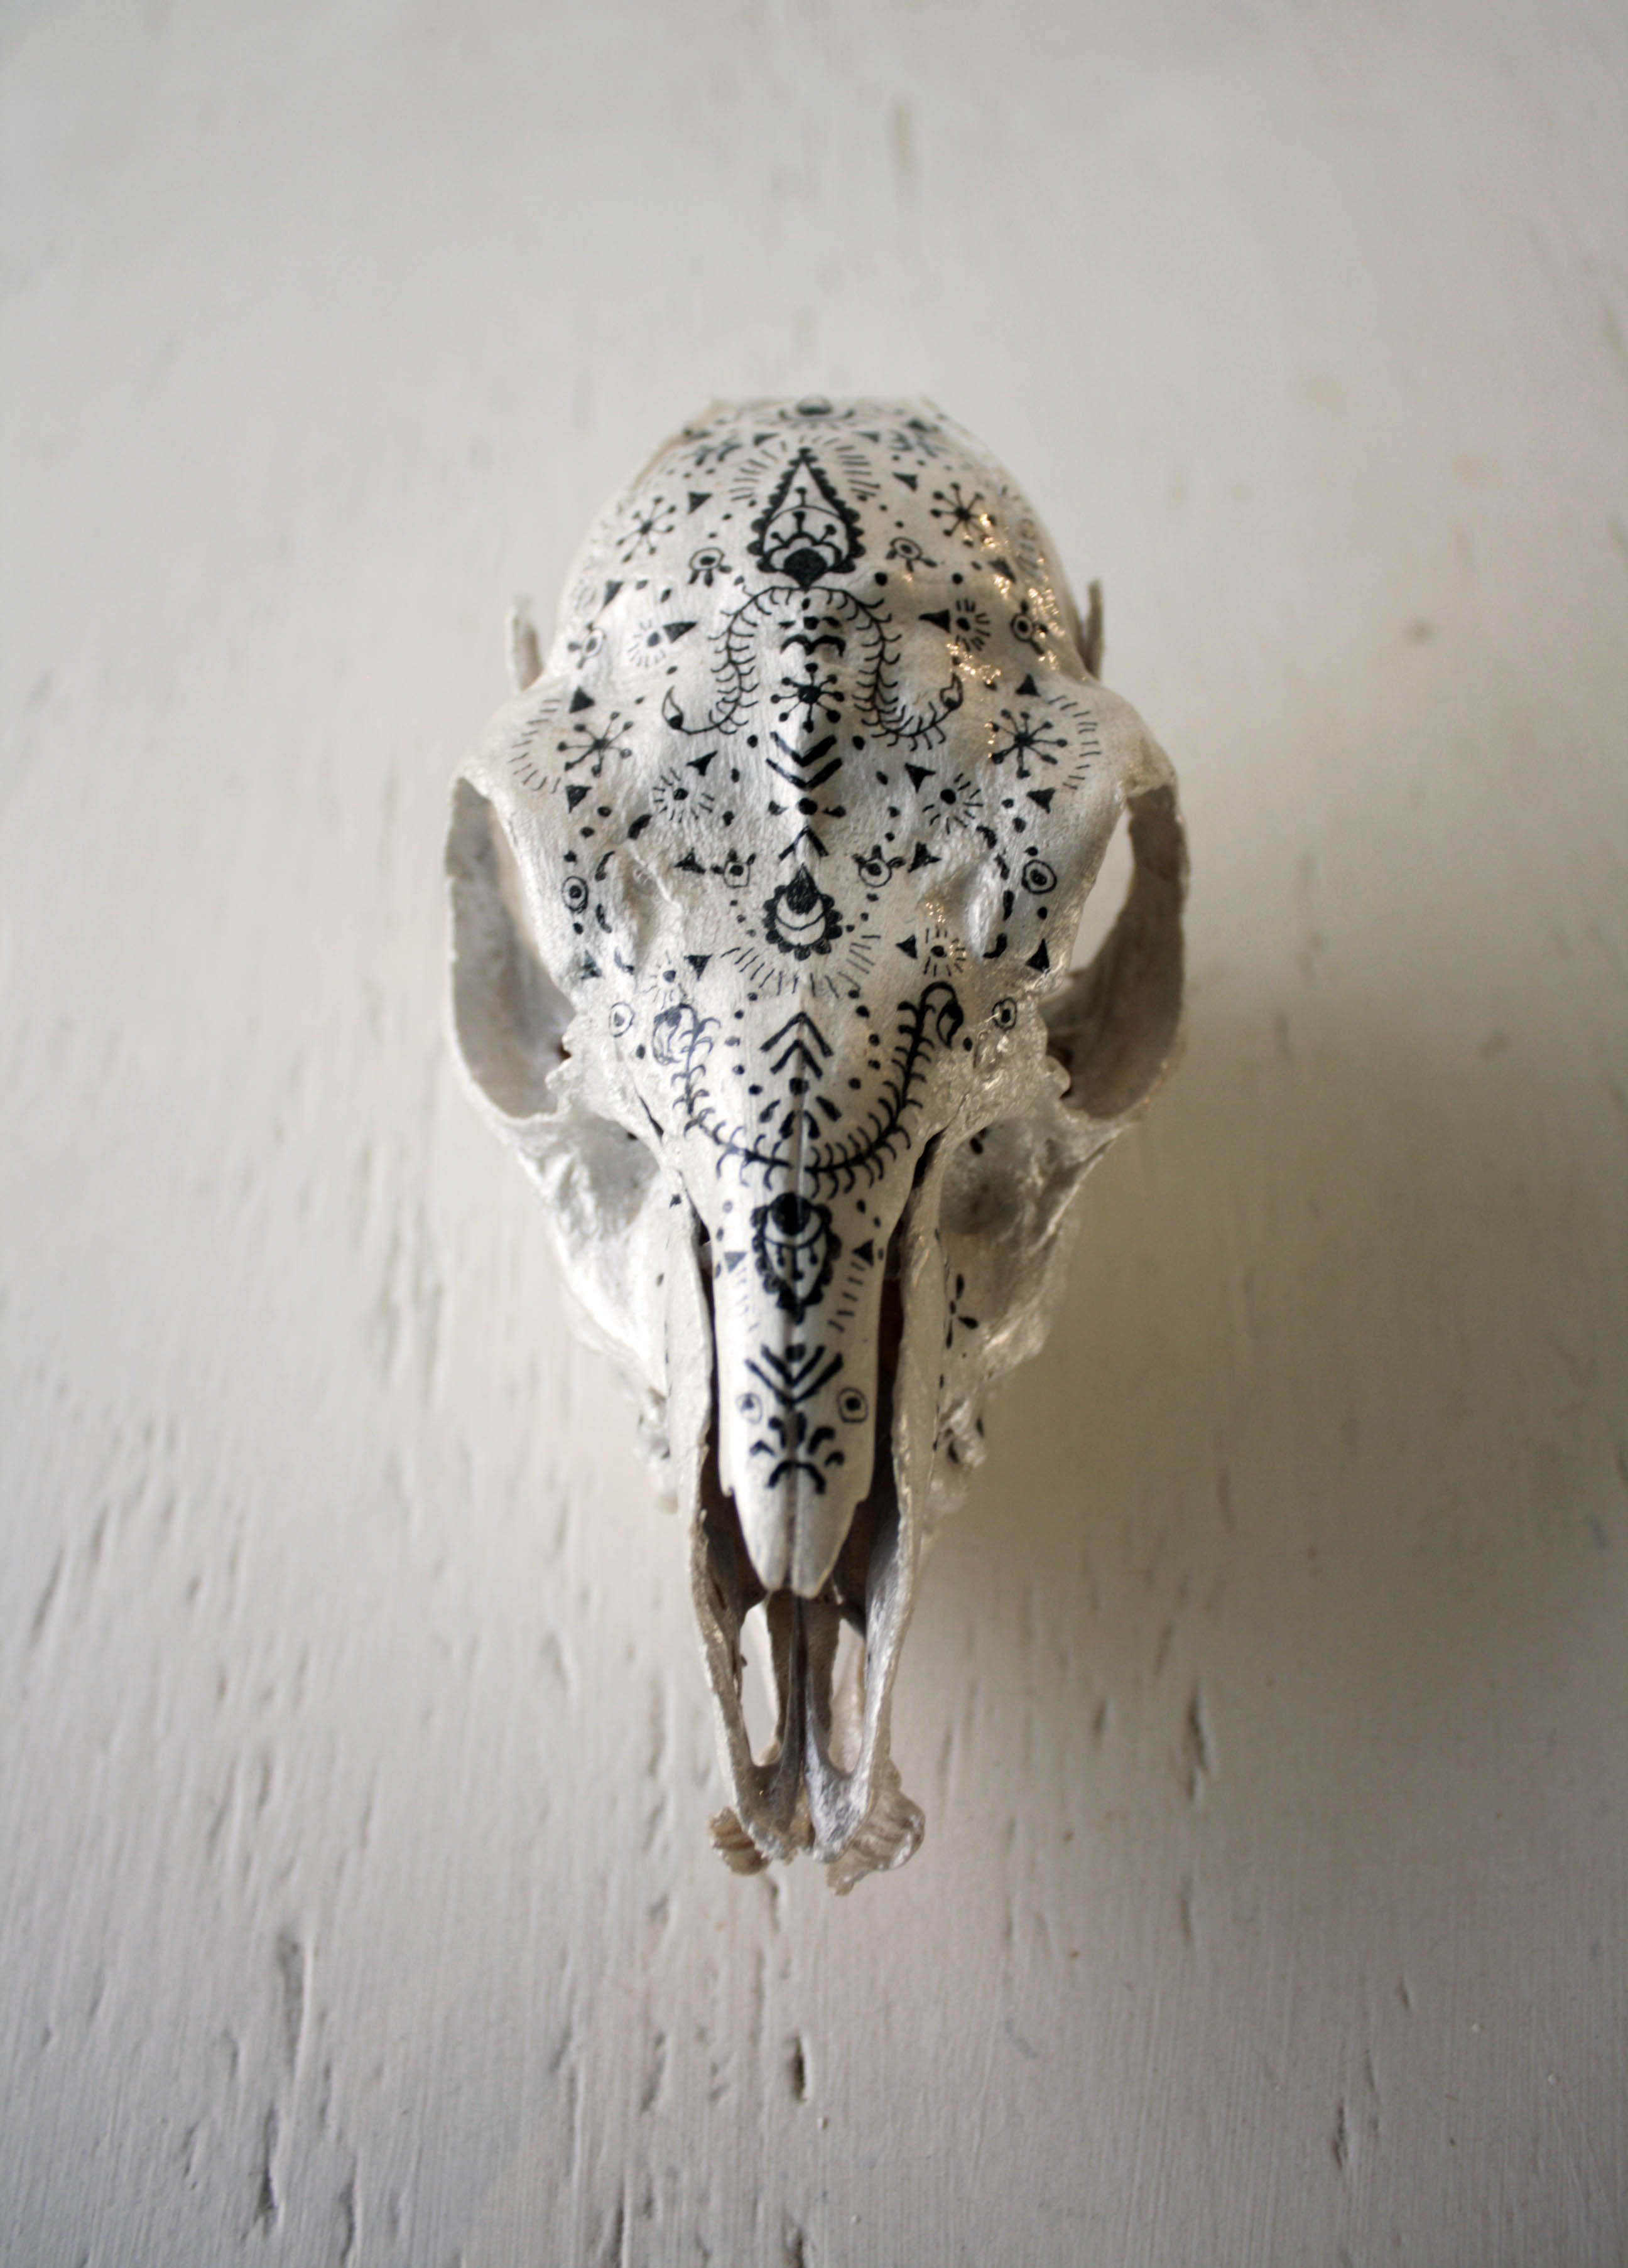 Duiker skull